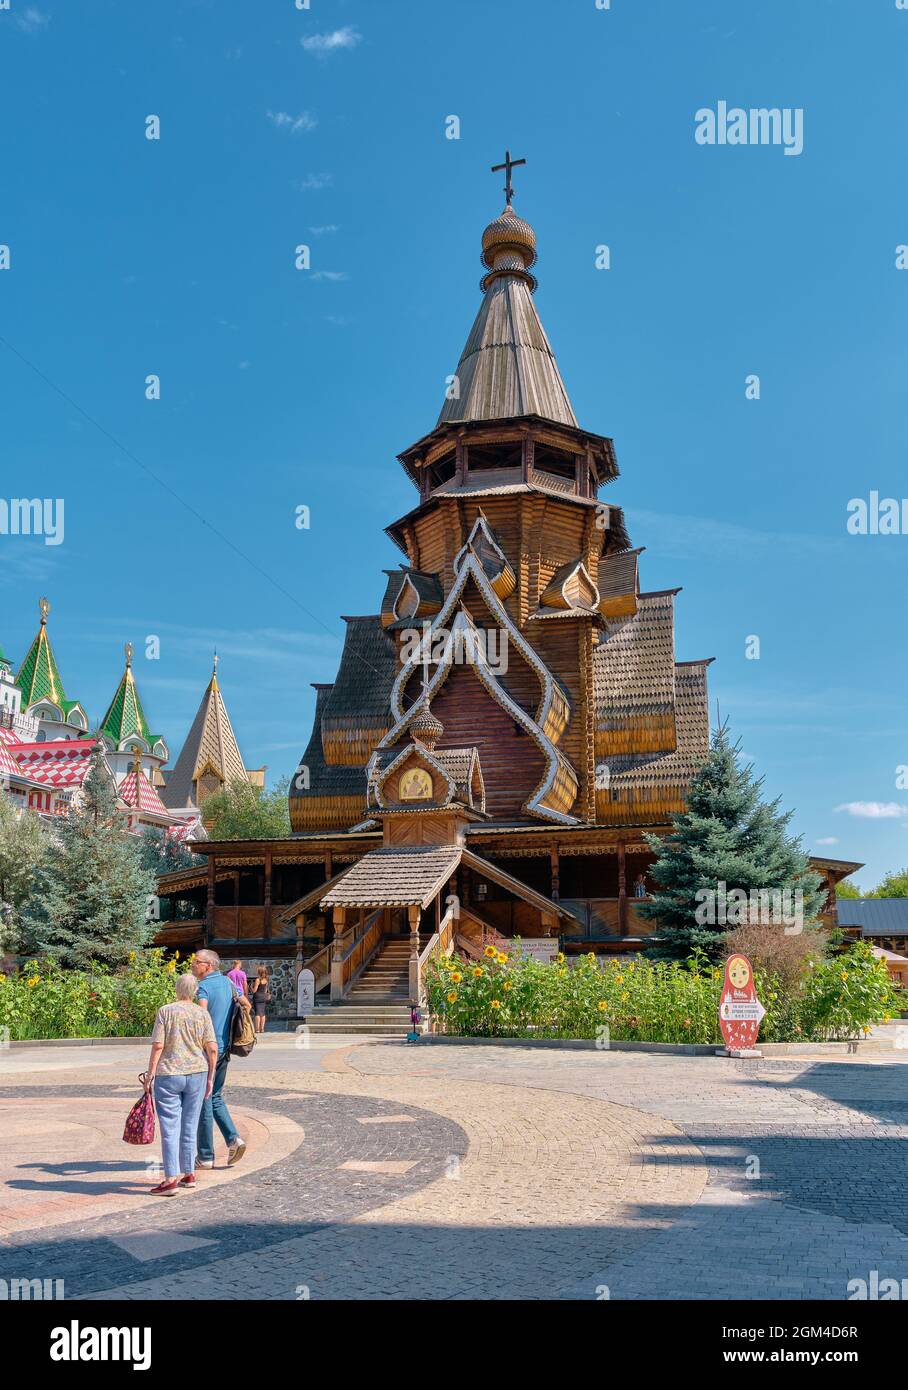 Vista della tenda di legno chiesa di San Nicola nel Cremlino Izmailovsky, costruito nel 2003, punto di riferimento: Mosca, Russia - 15 agosto 2021 Foto Stock